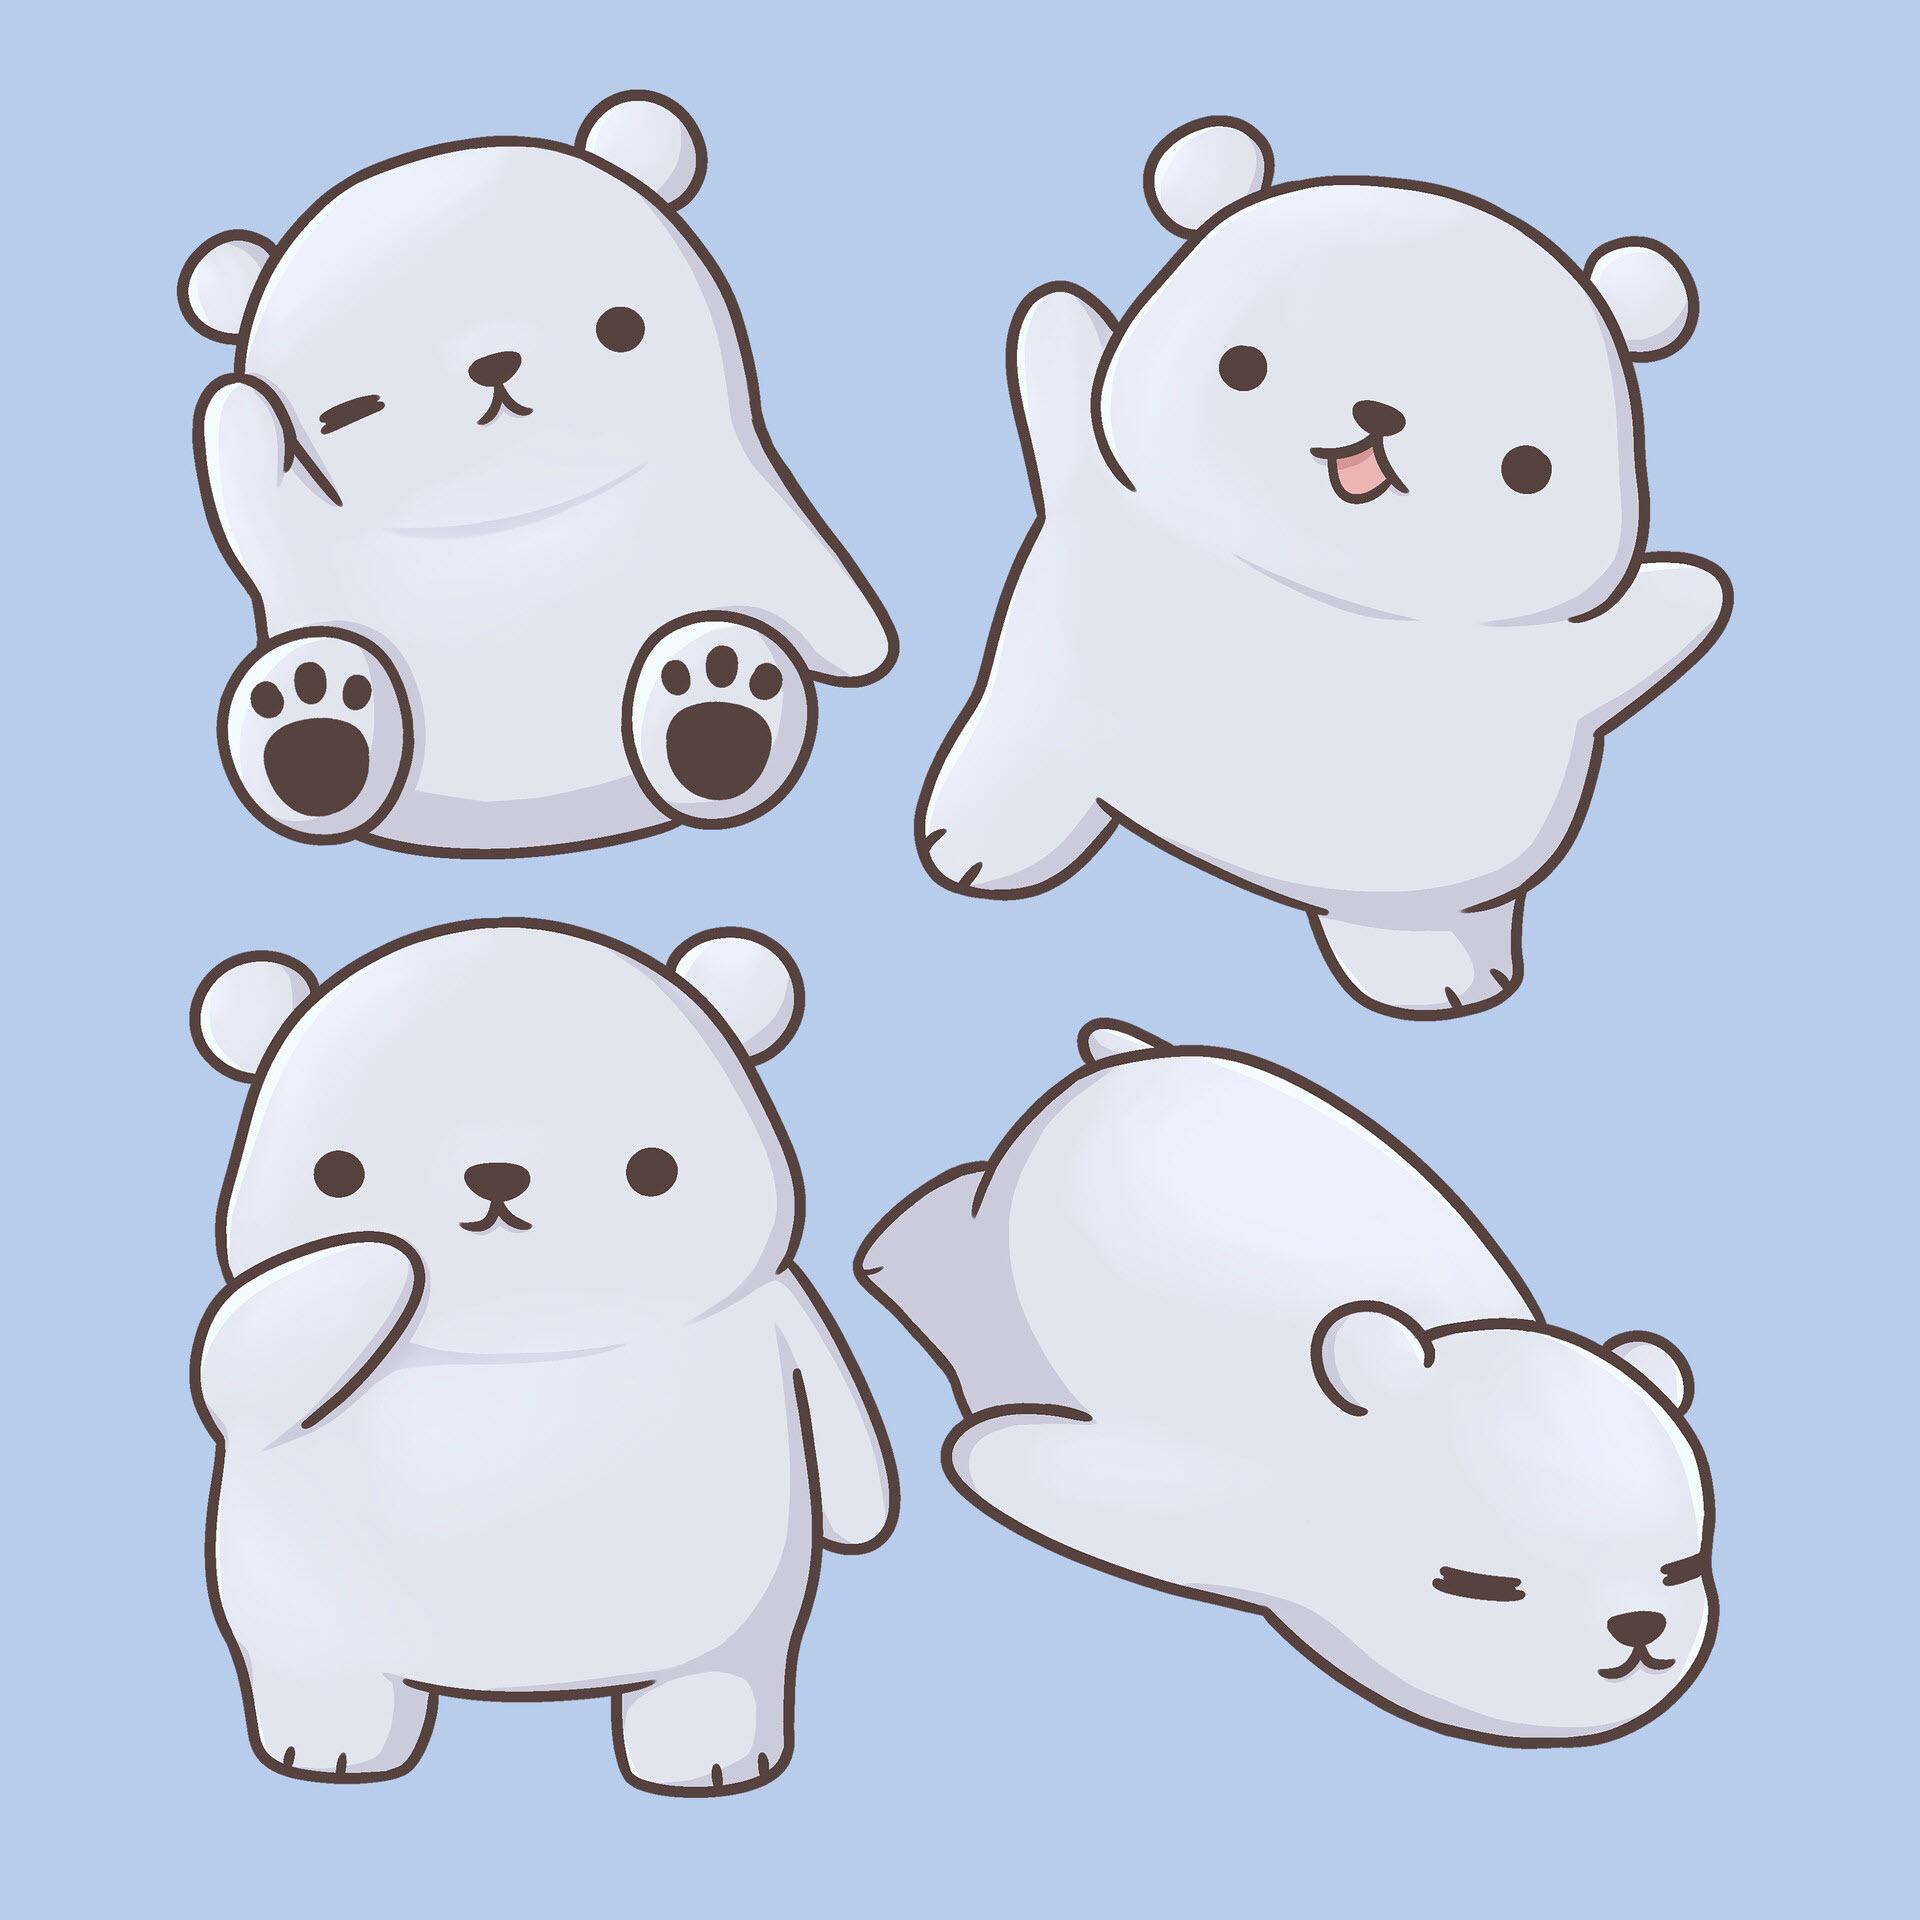 Chibi gấu trắng là nhân vật cực kỳ đáng yêu và dễ thương trong thế giới hoạt hình. Những hình ảnh chibi gấu trắng khơi gợi trí tưởng tượng và cảm xúc đáng yêu tình tựa hình như một phần của chúng ta. Chúng tôi rất vui mừng chia sẻ những hình ảnh về chibi gấu trắng trong năm